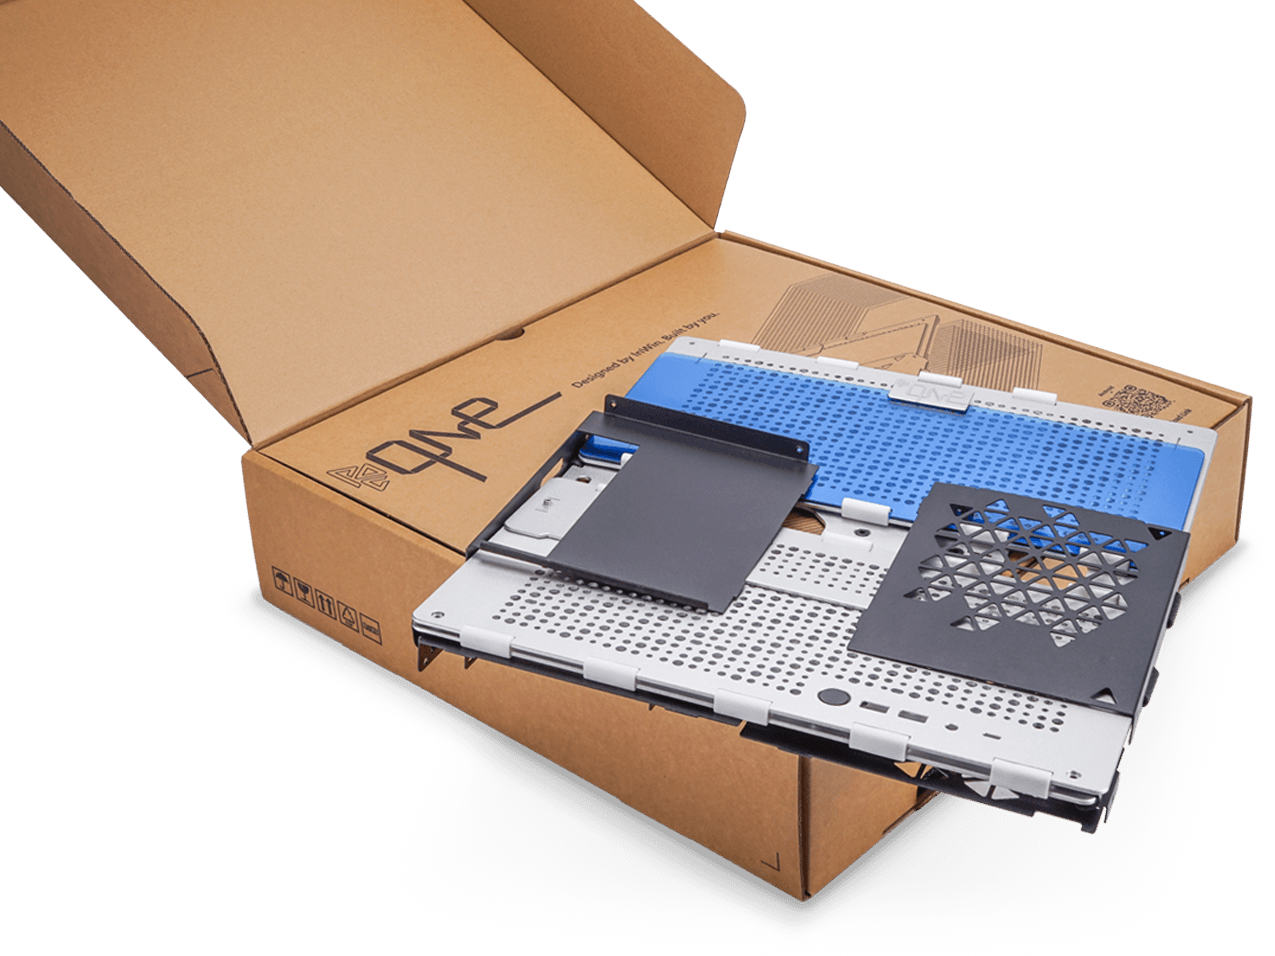 迎广推出 Mini-ITX 机箱 POC ONE，采用折叠扁平包装